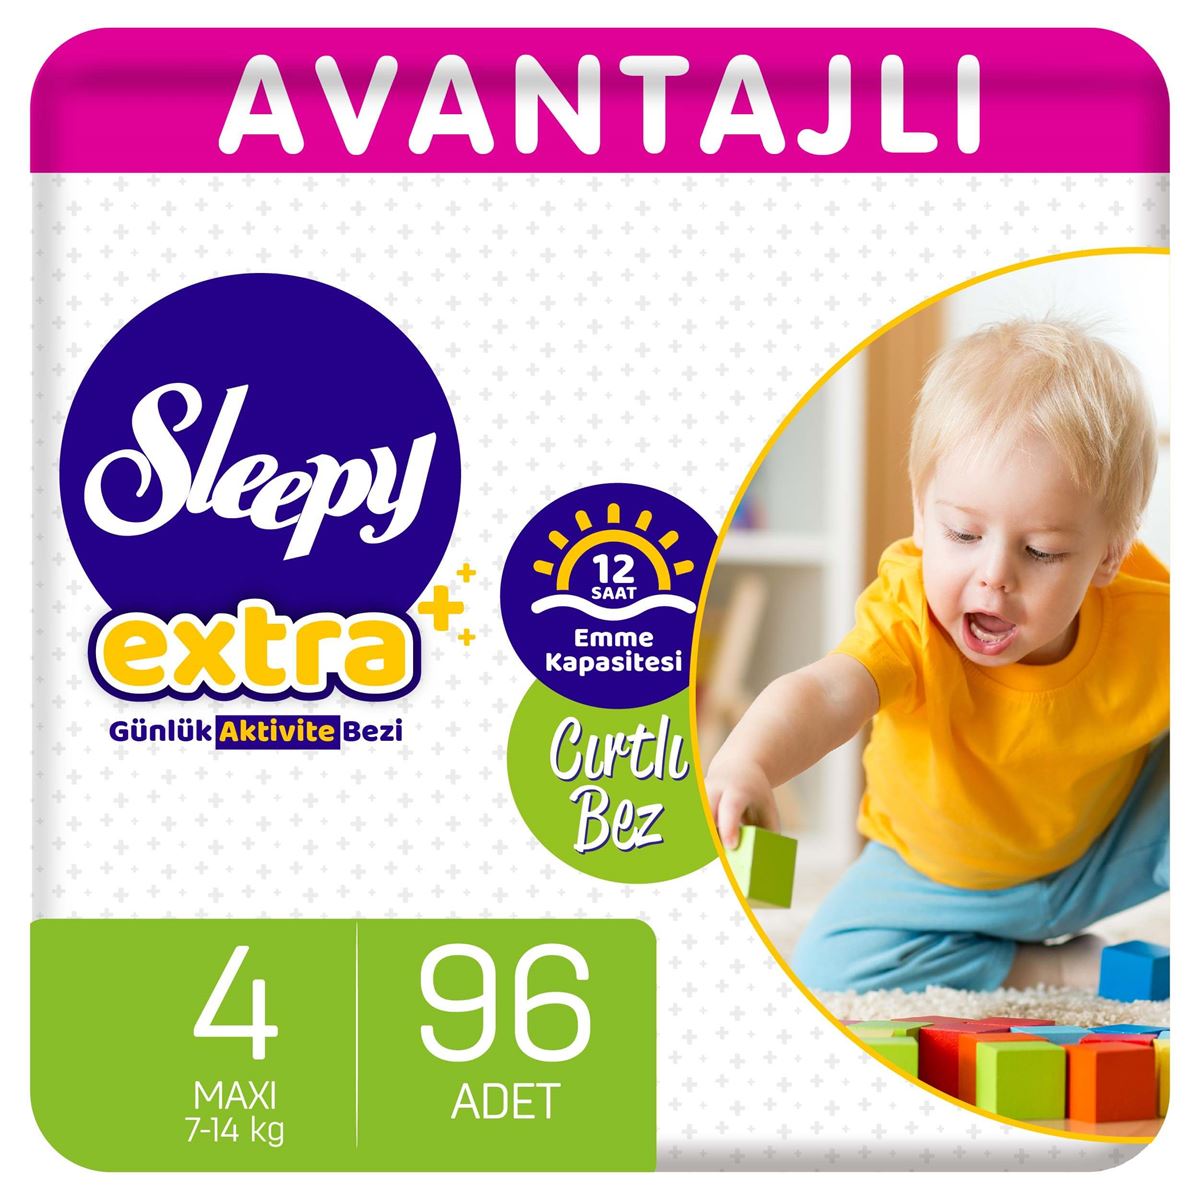 Sleepy Extra Avantajlı Bebek Bezi 4 Numara Maxi 96 Adet